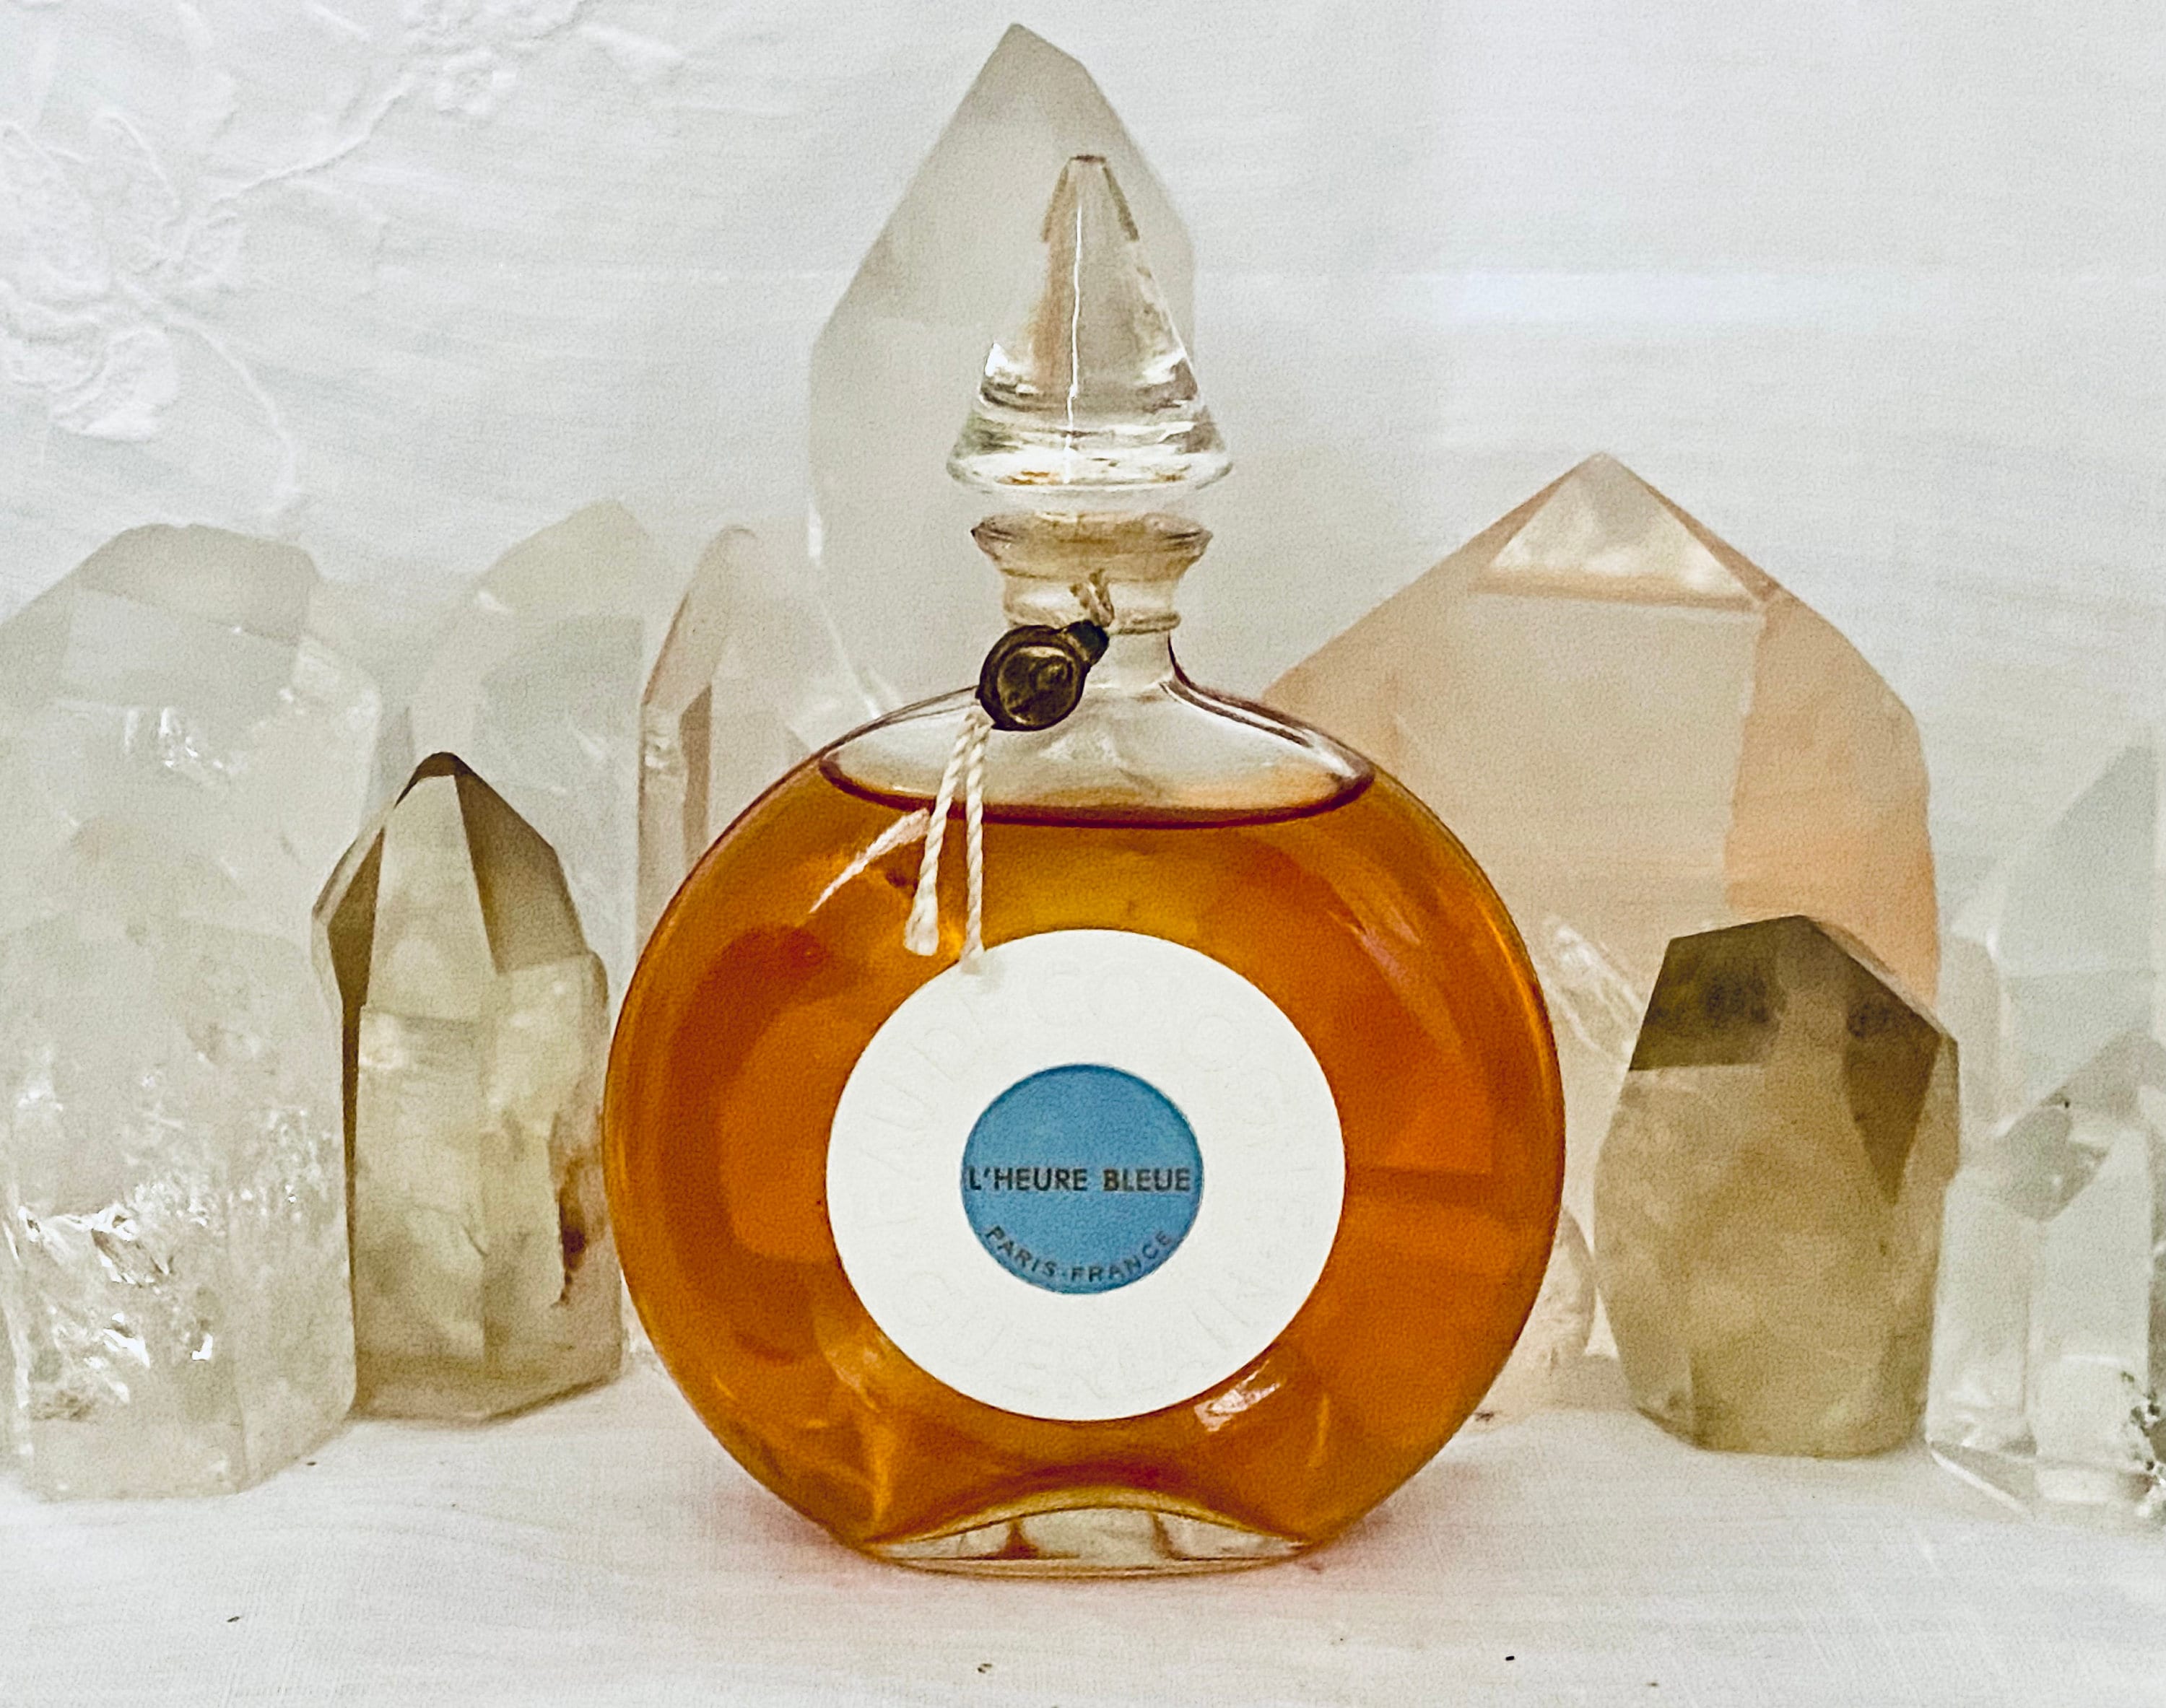 L&#039;Instant de Guerlain pour Homme EDP Guerlain cologne - a fragrance  for men 2015